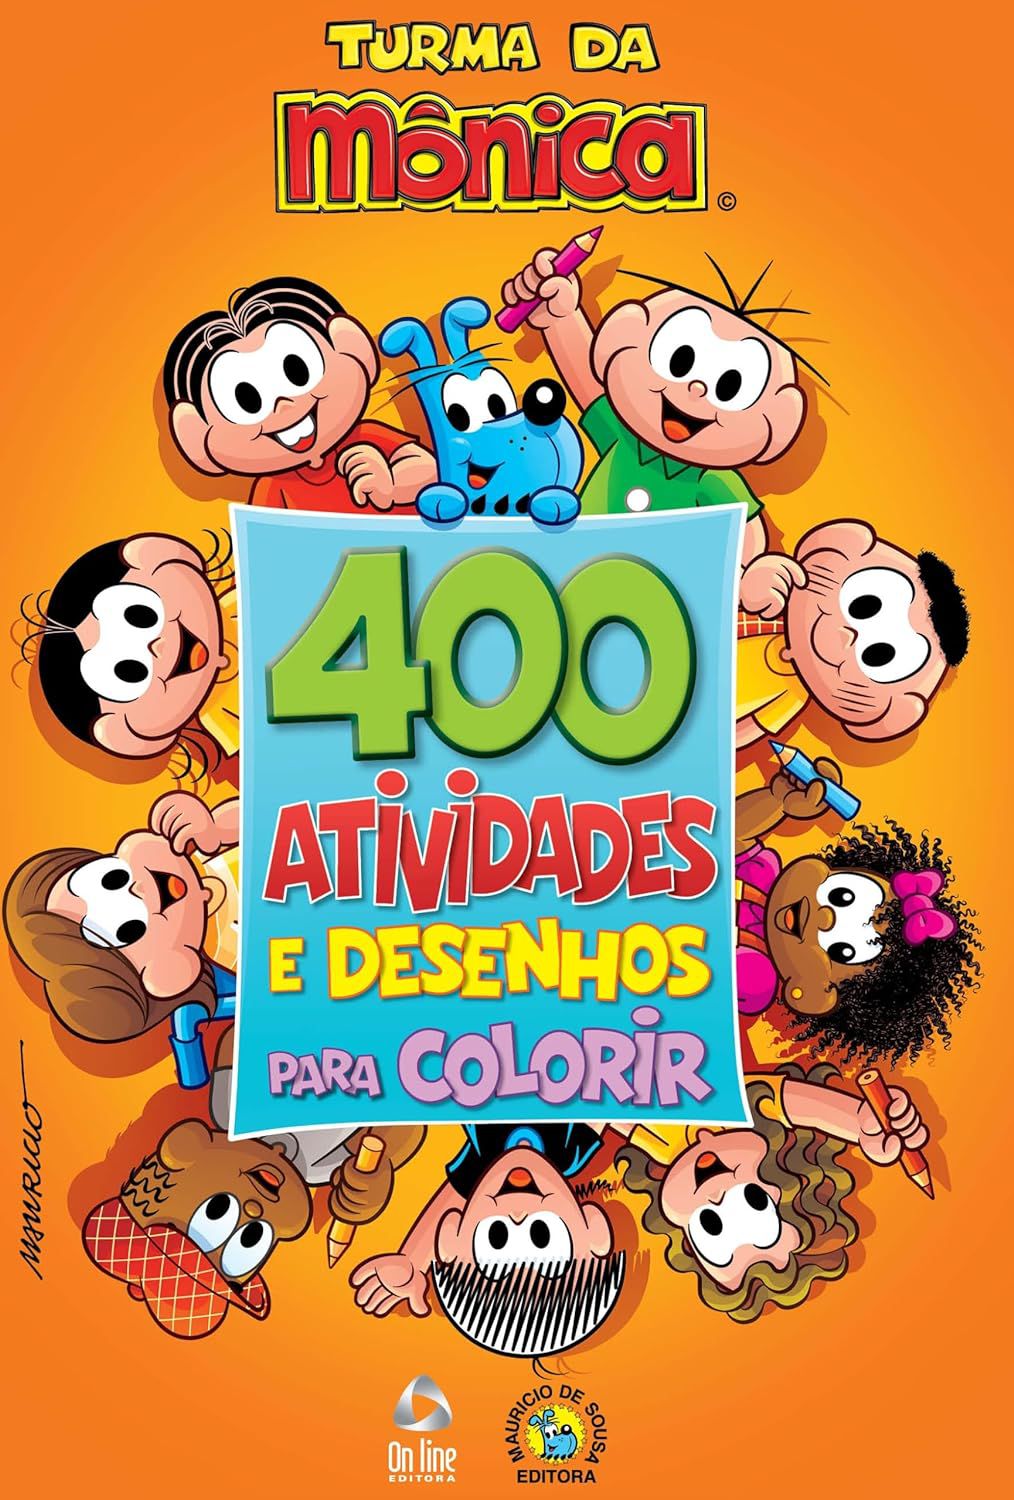 Livro para Colorir Turma da Mônica com Aquarela - Livros de